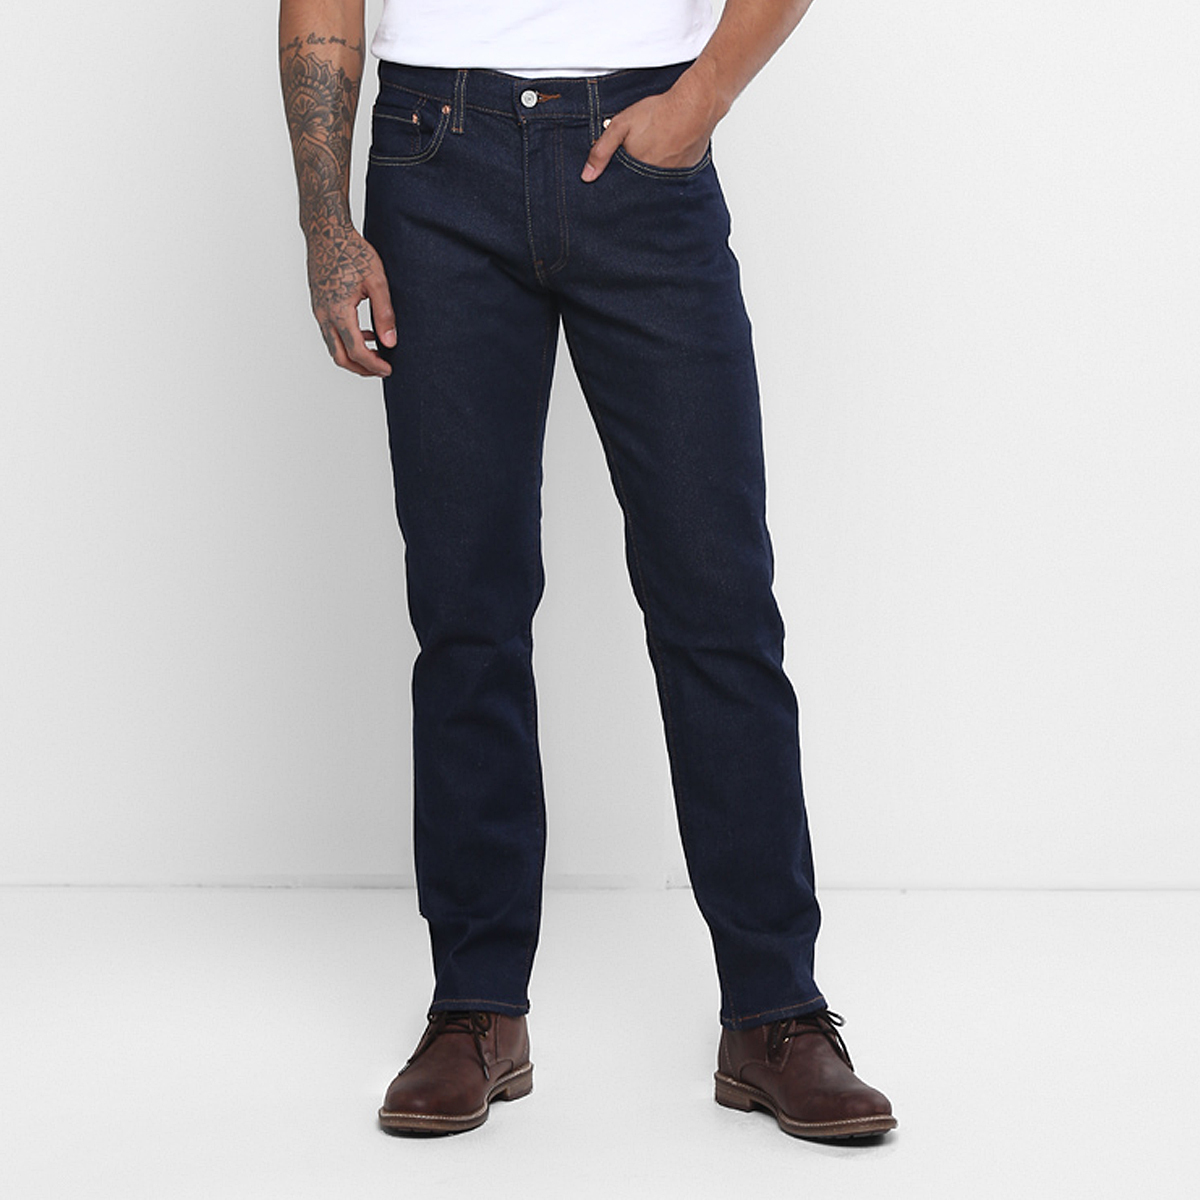 LEVIS MEN Single Length Jeans 18298-0782 Blue 34